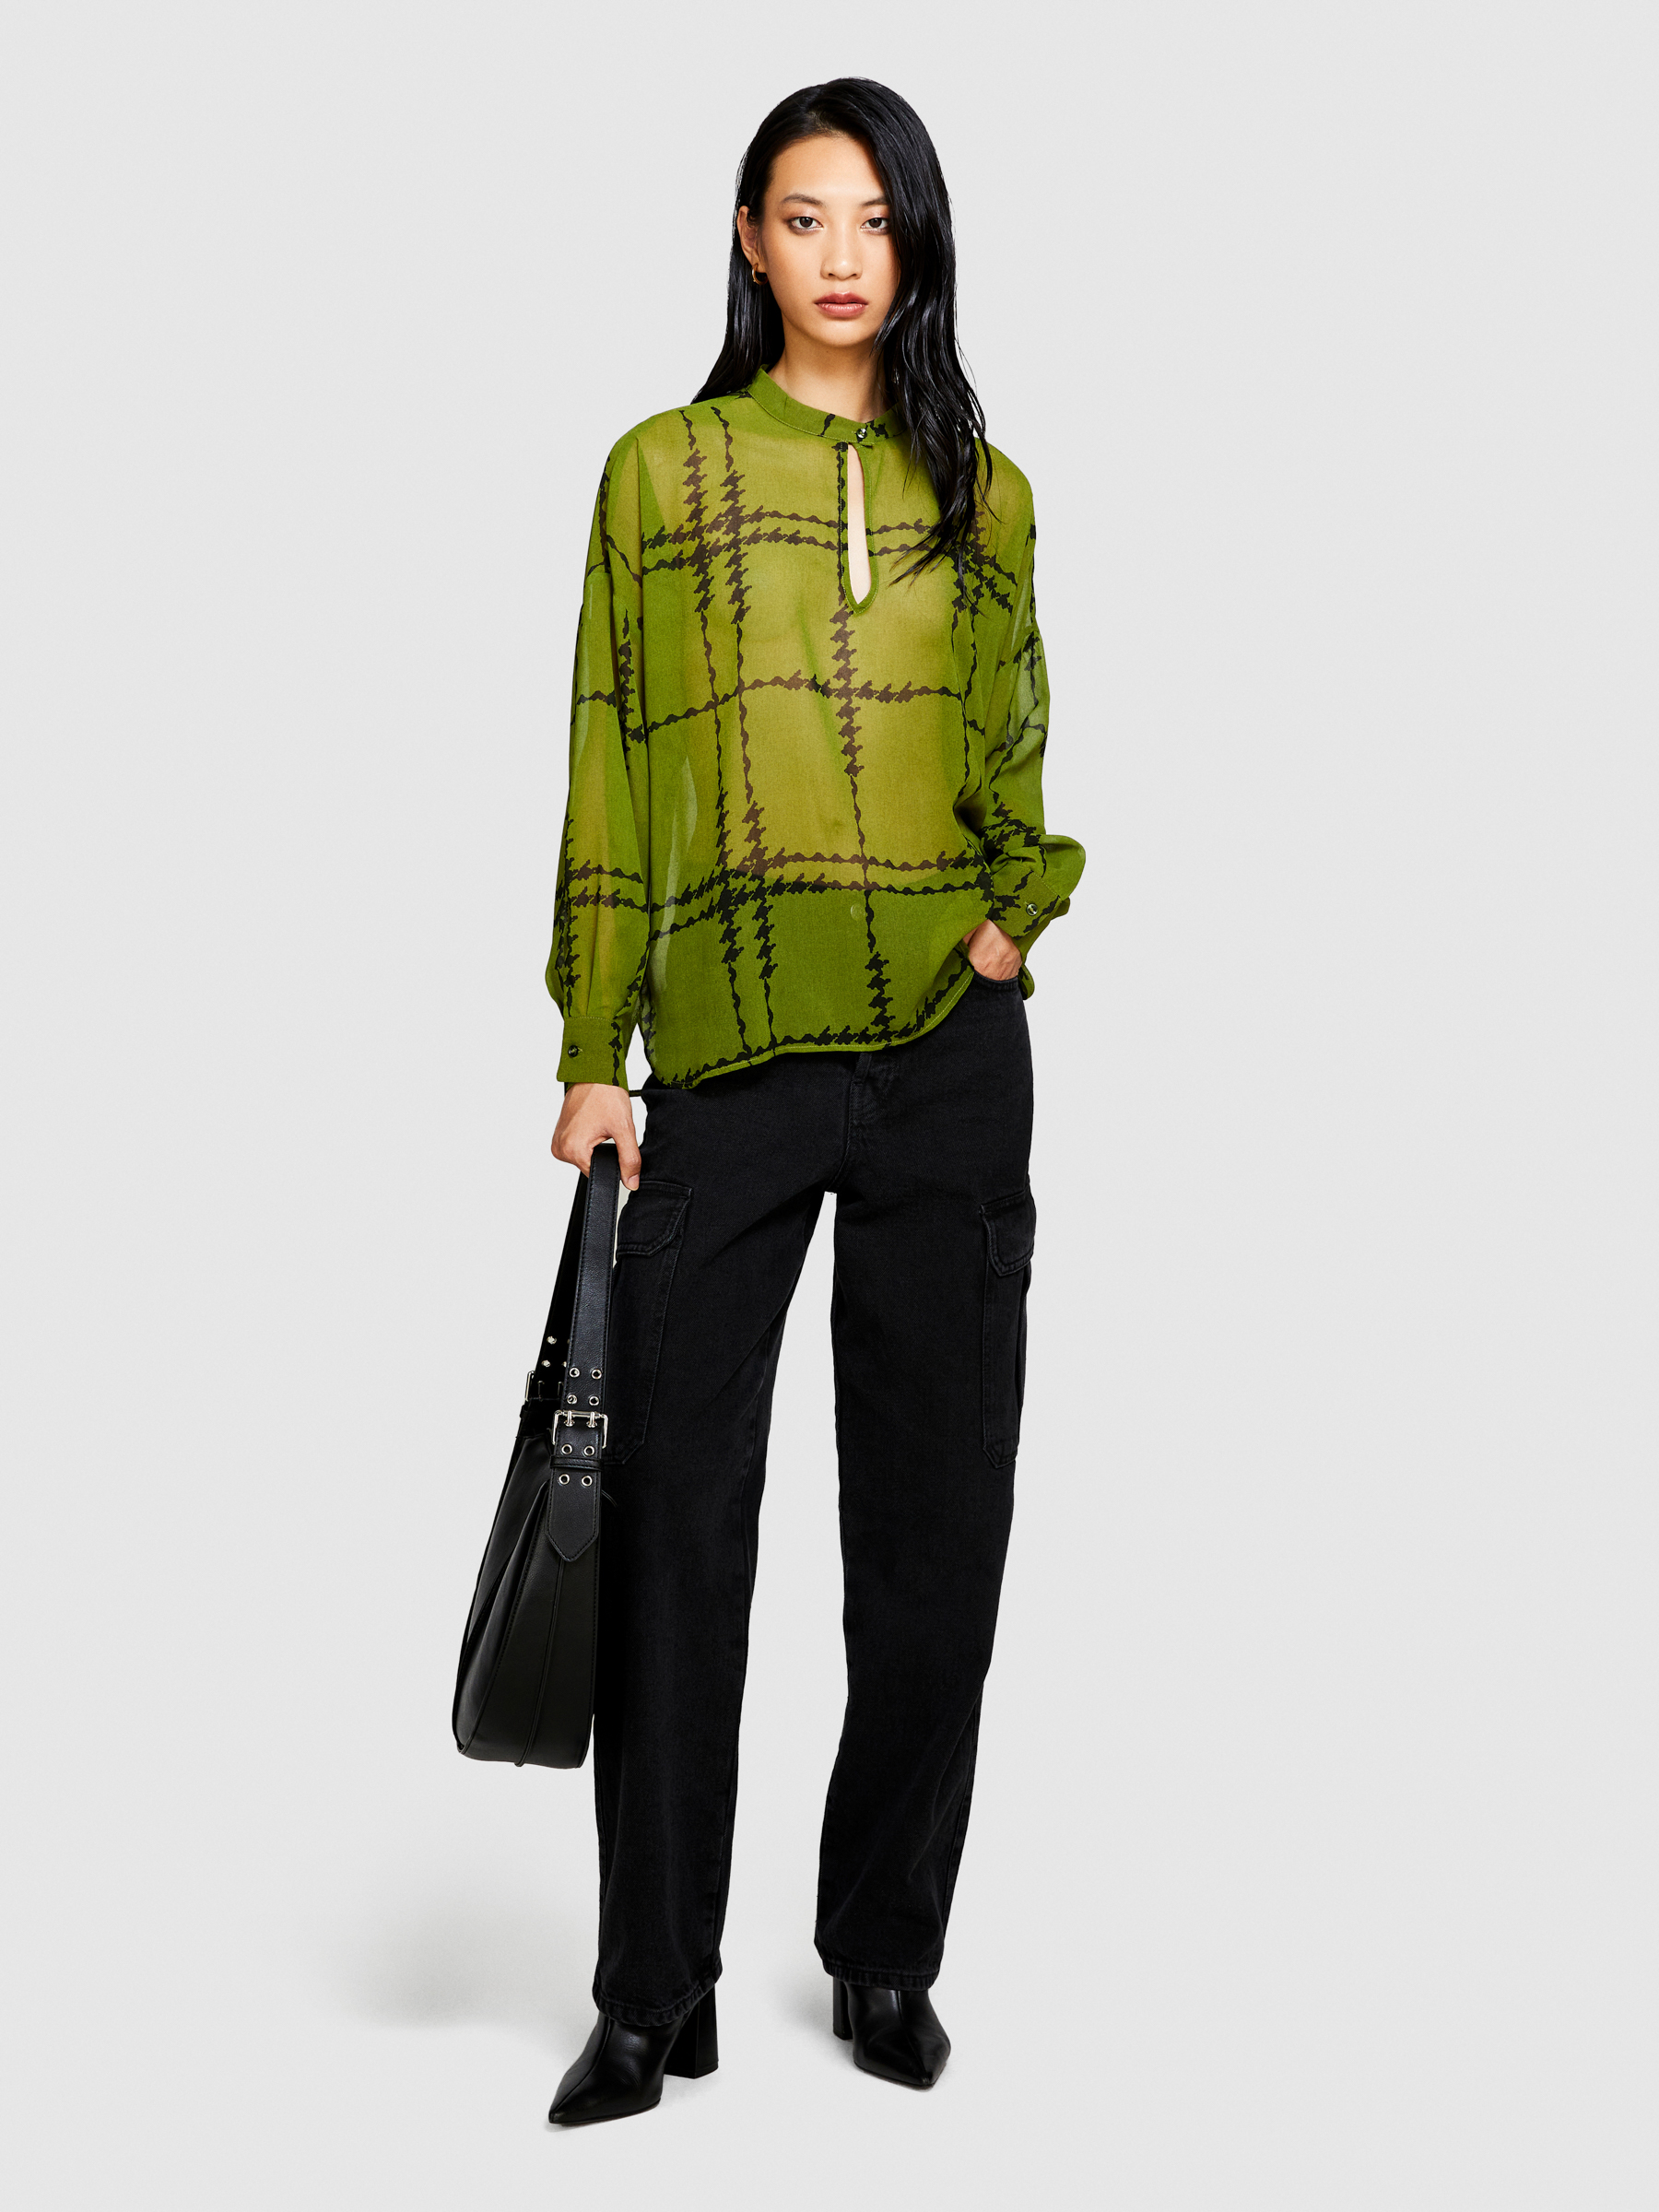 Sisley - Printed Chiffon Blouse, Woman, Olive Green, Size: XS